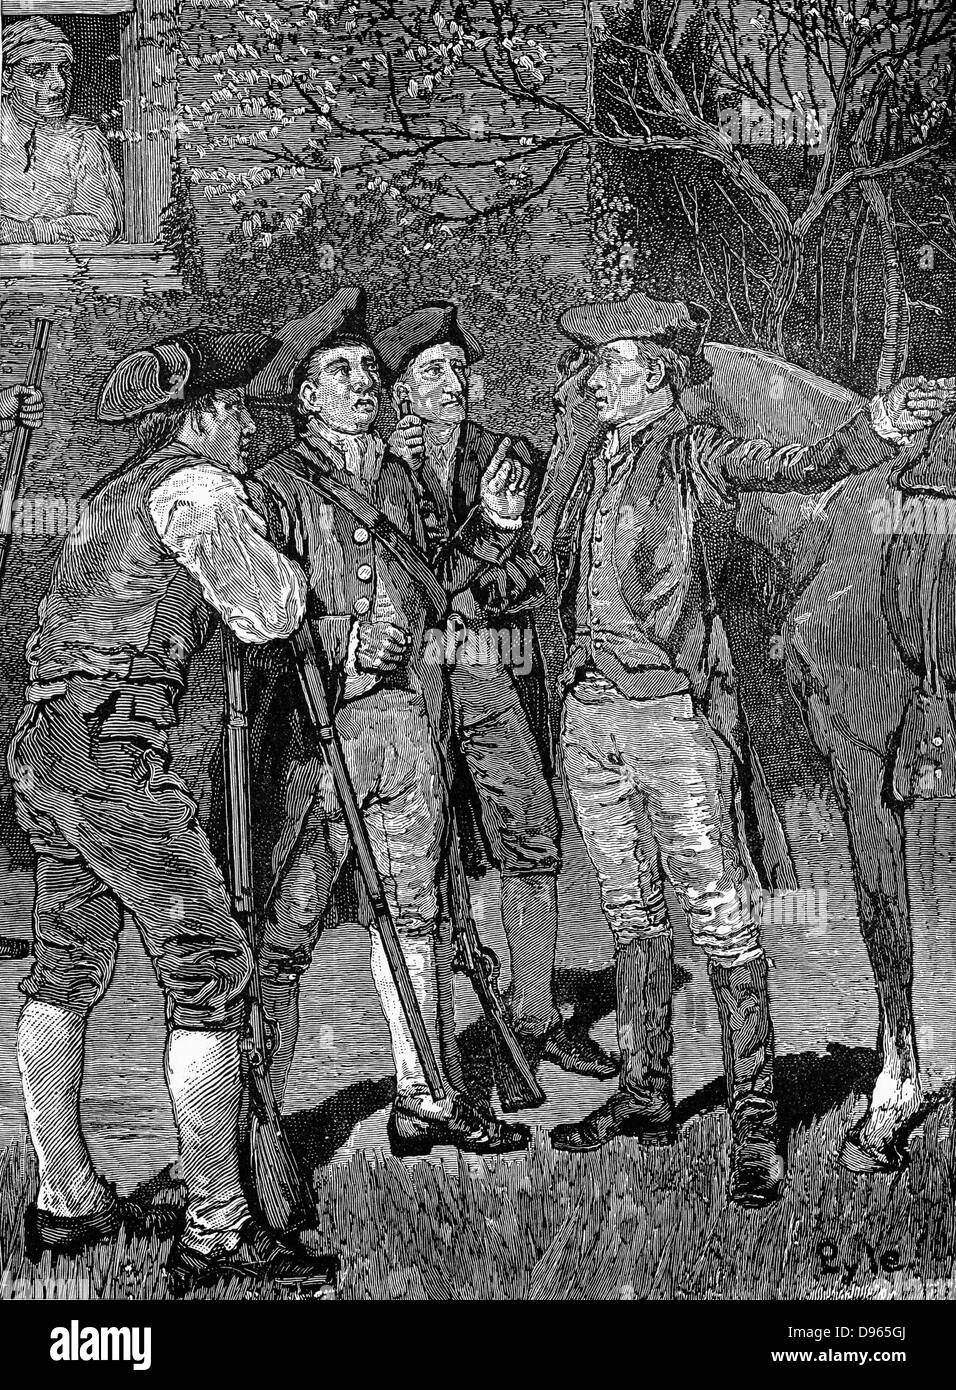 Paul Revere (1735-1818), orfèvre et patriote américain arrivant à Lexington de Boston avec la nouvelle que les Anglais étaient sur le Pitcairn sous propose : 18 avril 1775. Guerre d'Indépendance américaine. Publié 1886 Gravure Banque D'Images